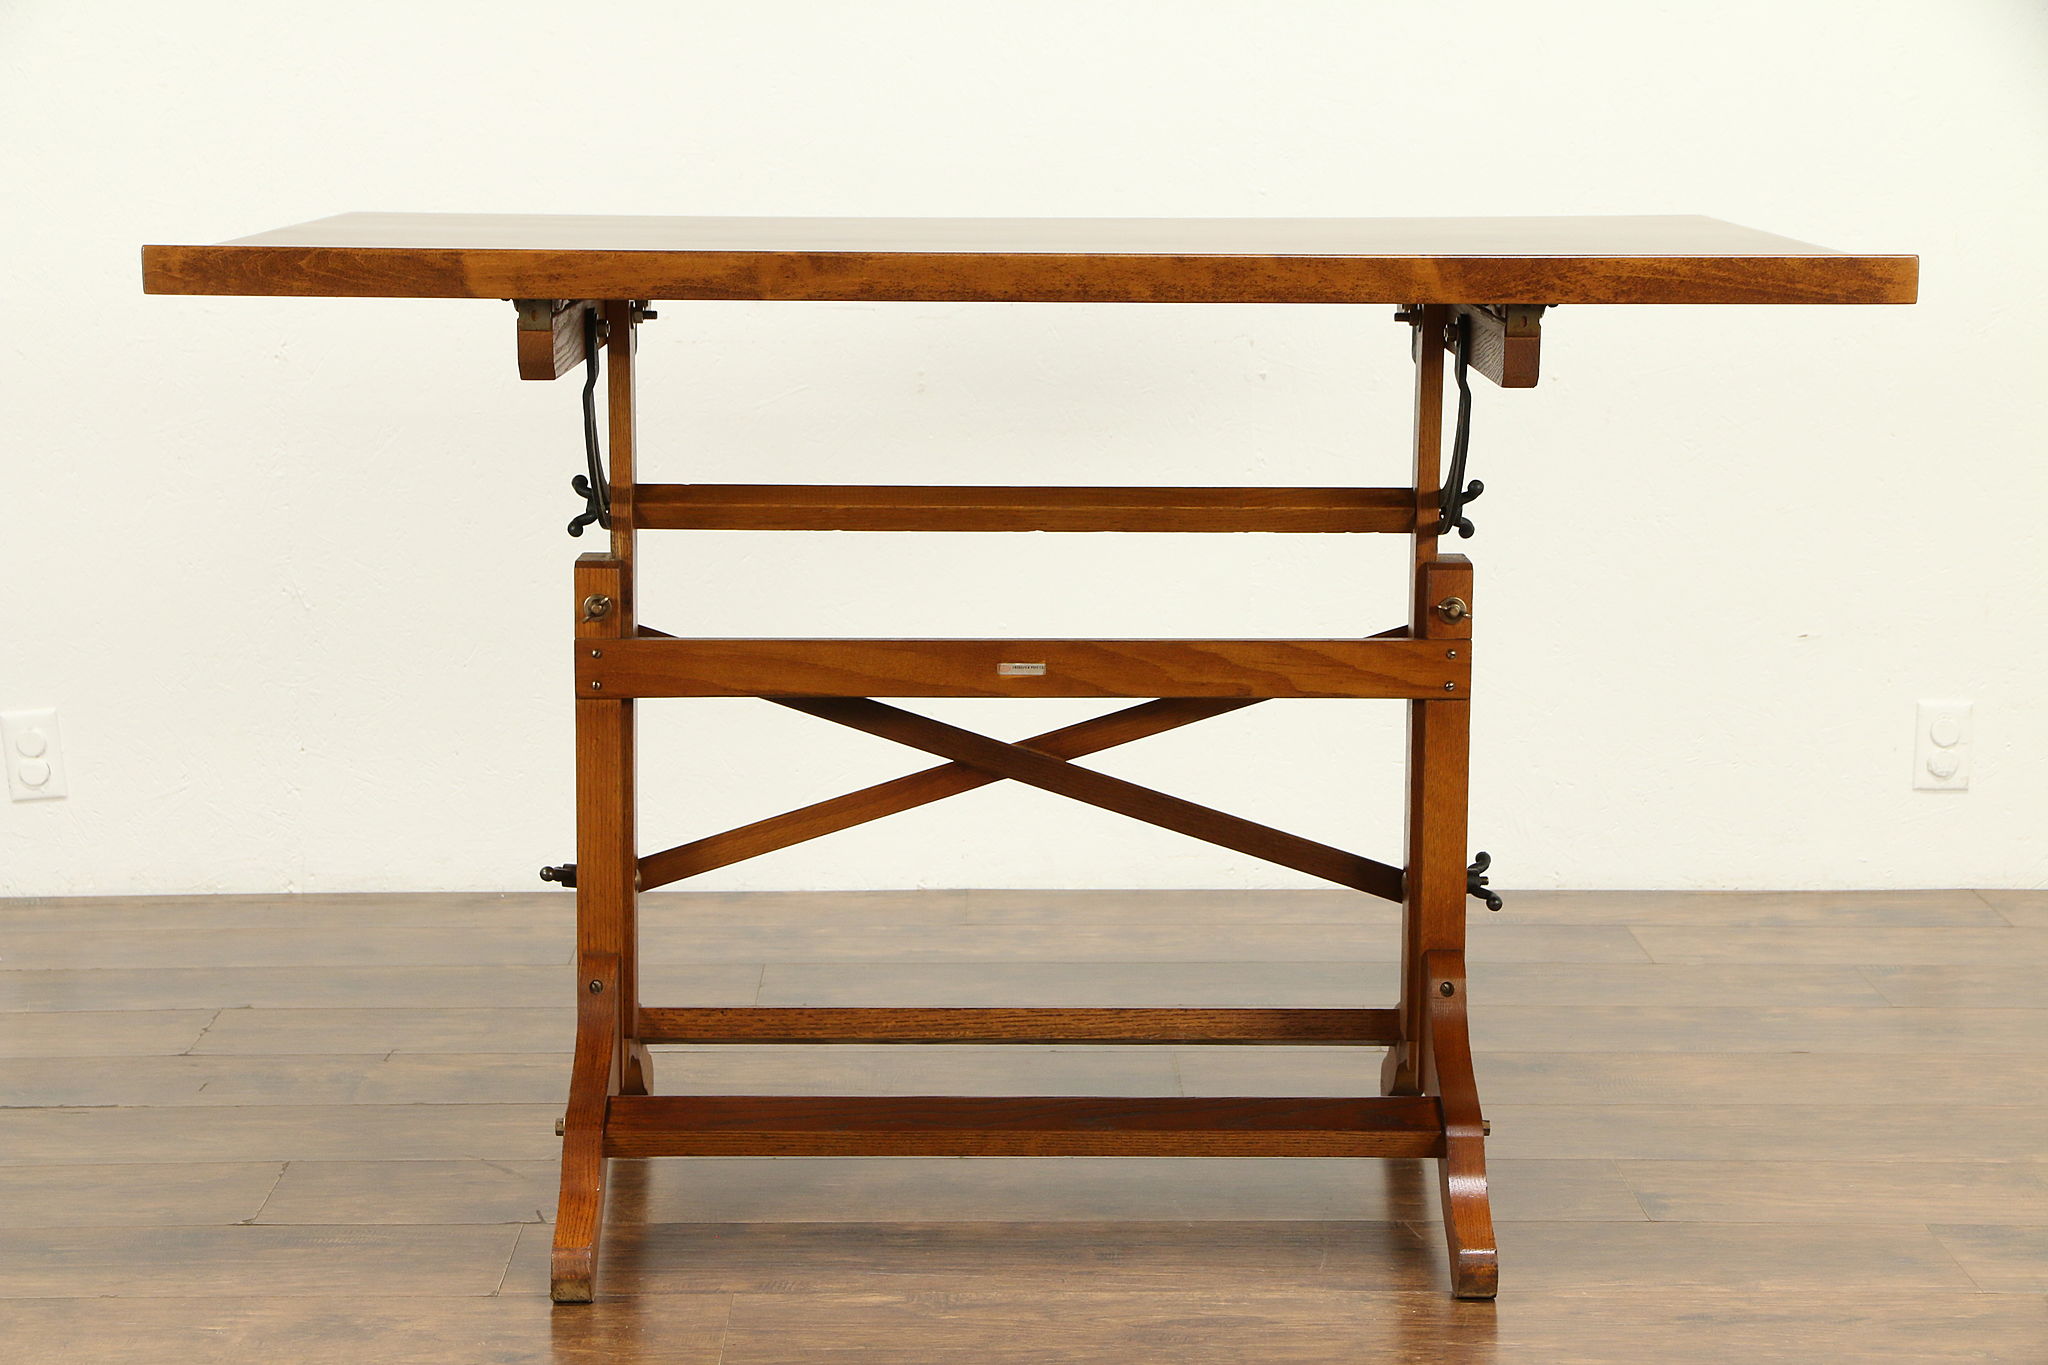 Sold Drafting Or Wine Table Adjustable Vintage Artist Desk